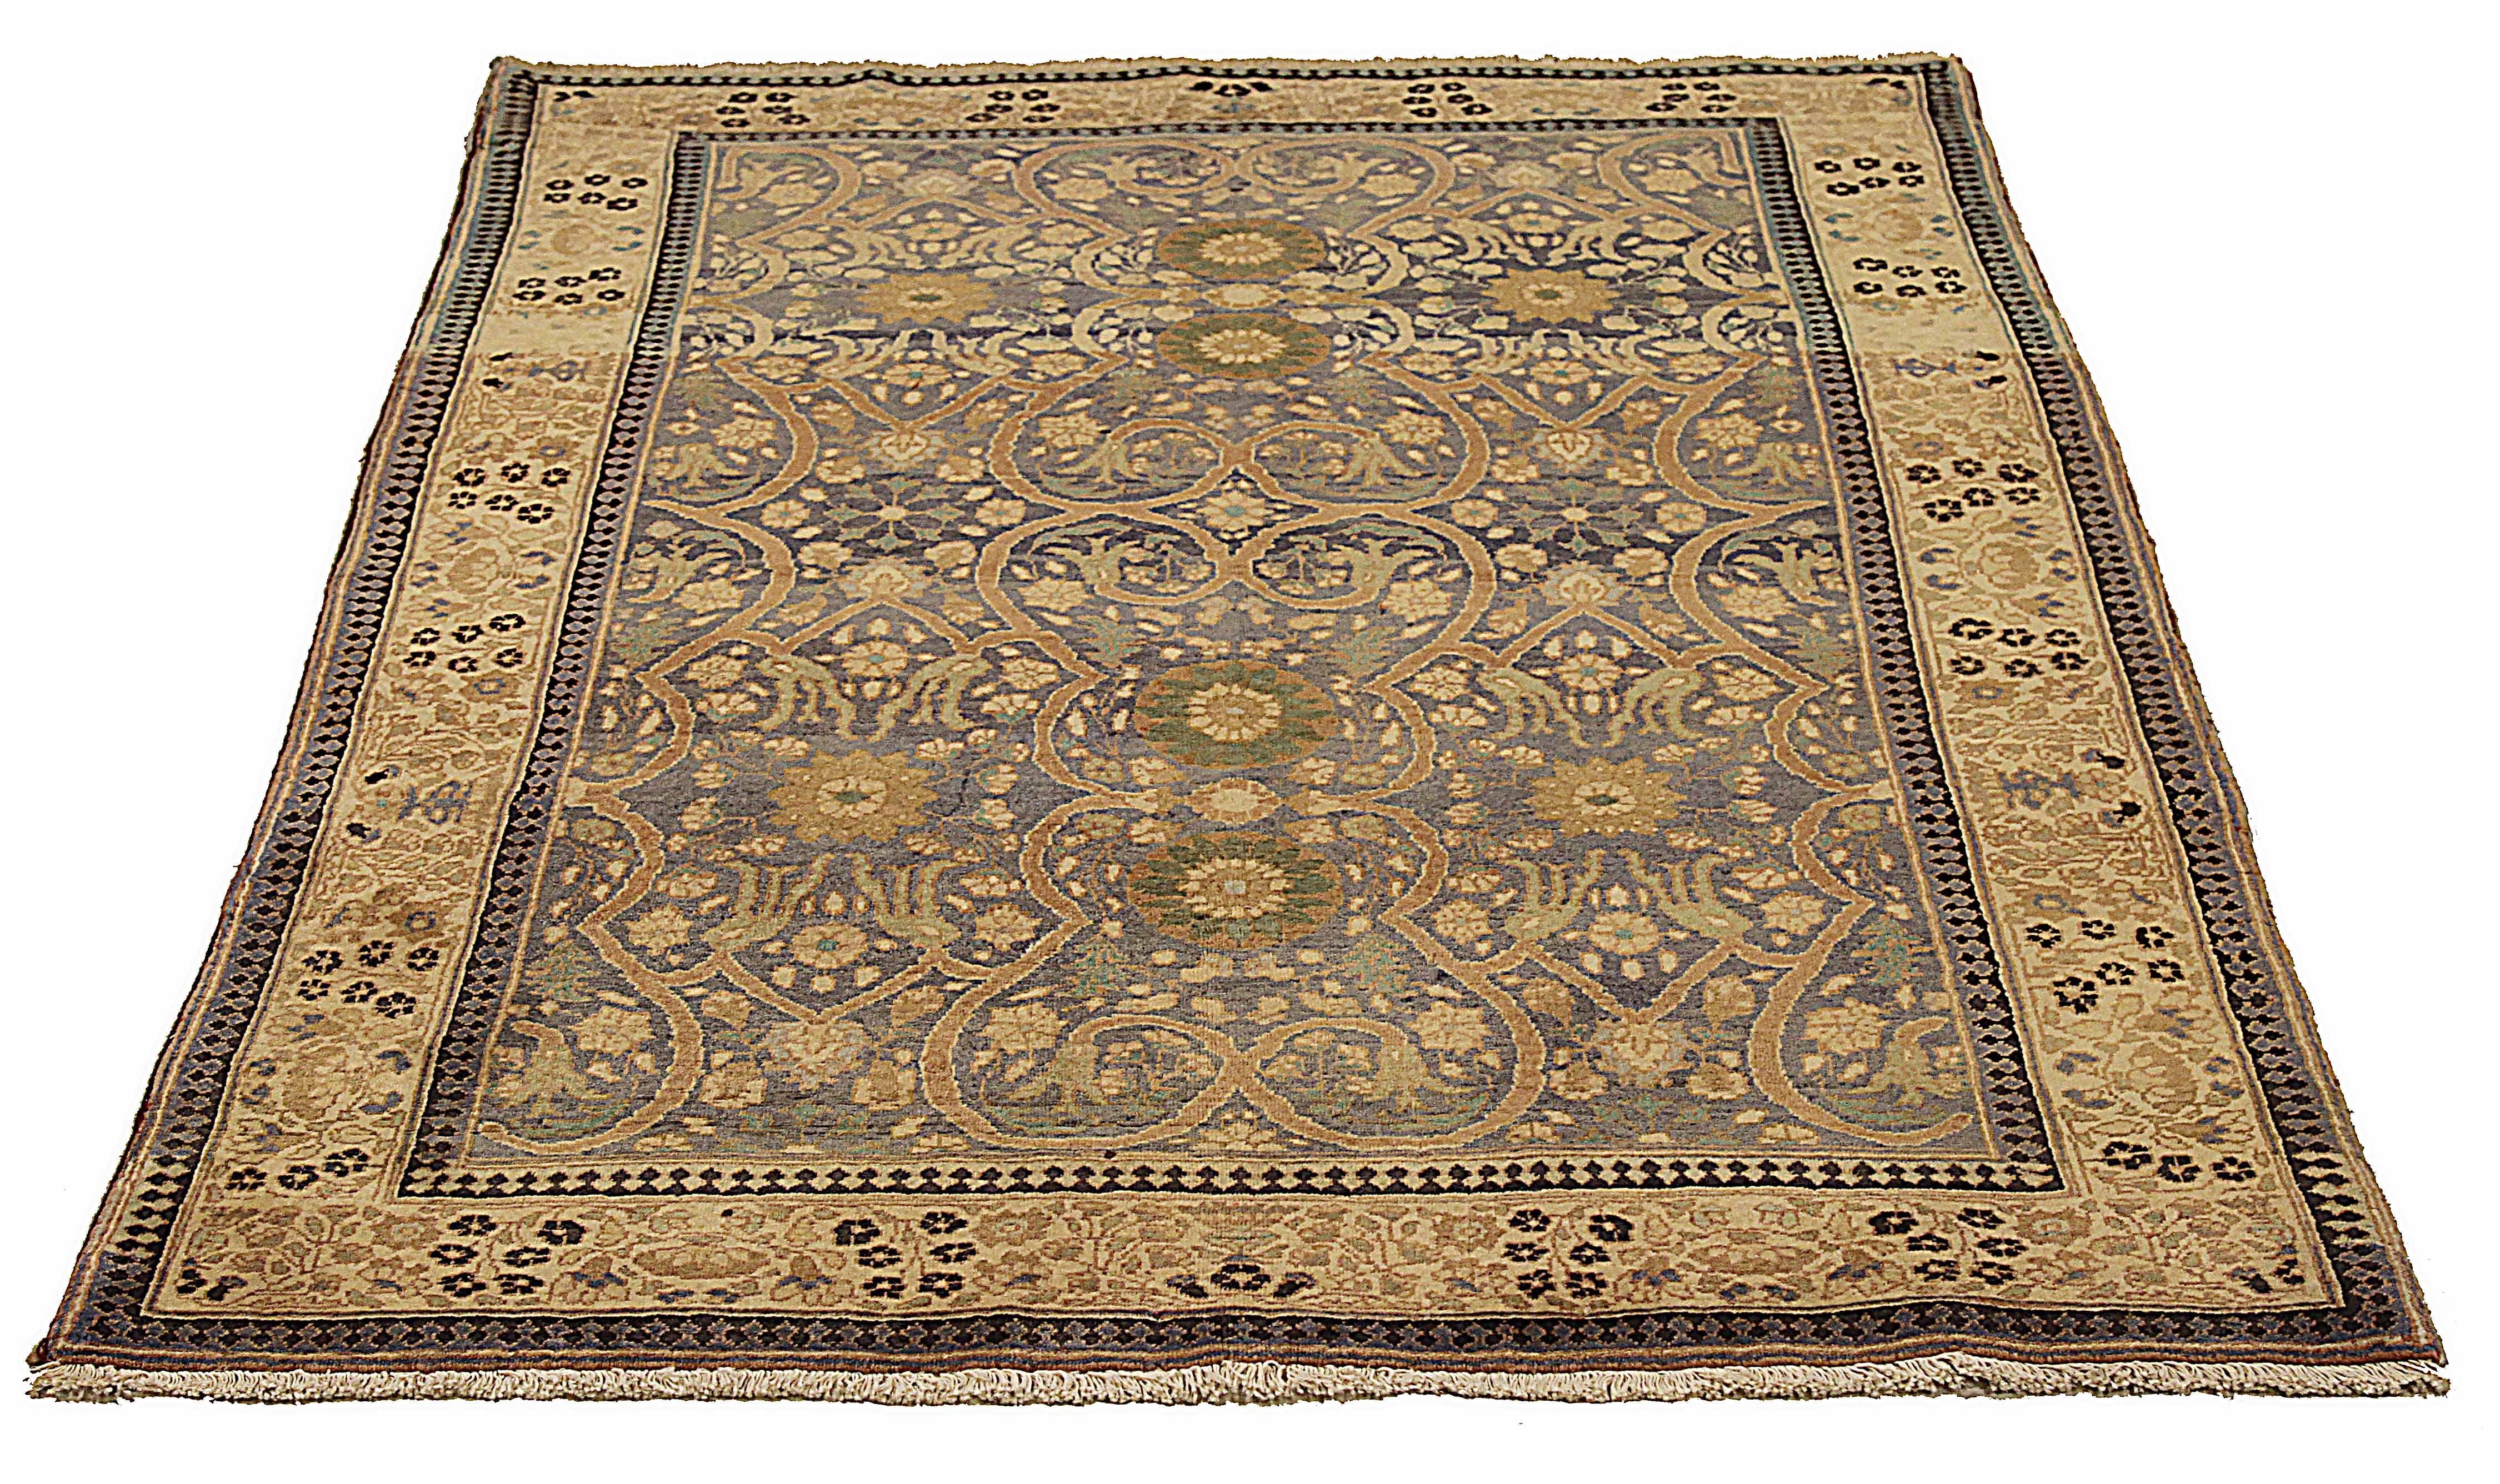 Antiker indischer Teppich aus feinster Schafswolle, handgewebt. Er ist mit natürlichen Pflanzenfarben gefärbt, die für Menschen und Tiere sicher sind. Es handelt sich um ein traditionelles Agra-Design, das von erfahrenen Kunsthandwerkern handgewebt